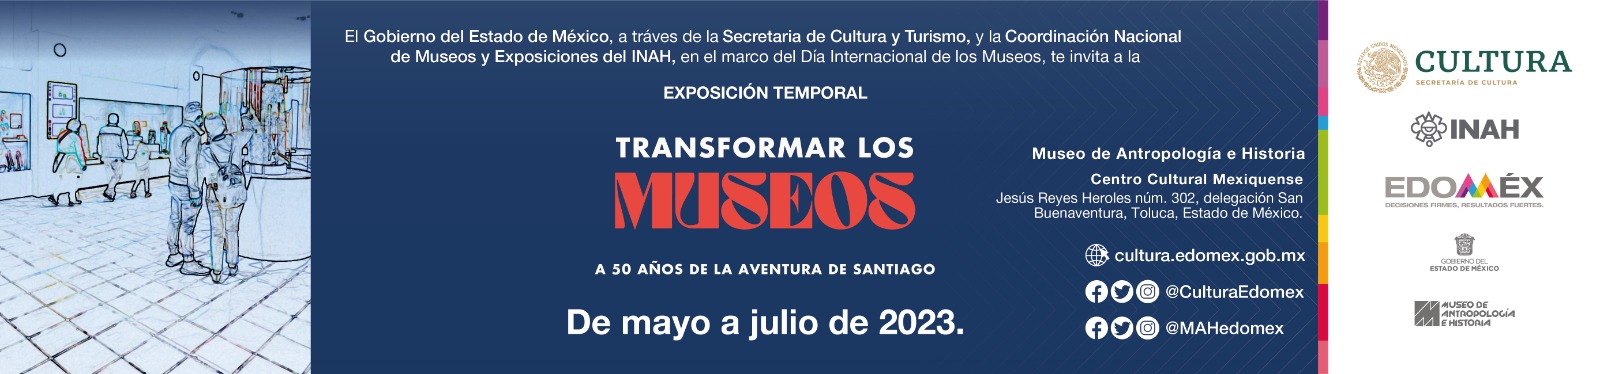 Transformar los Museos